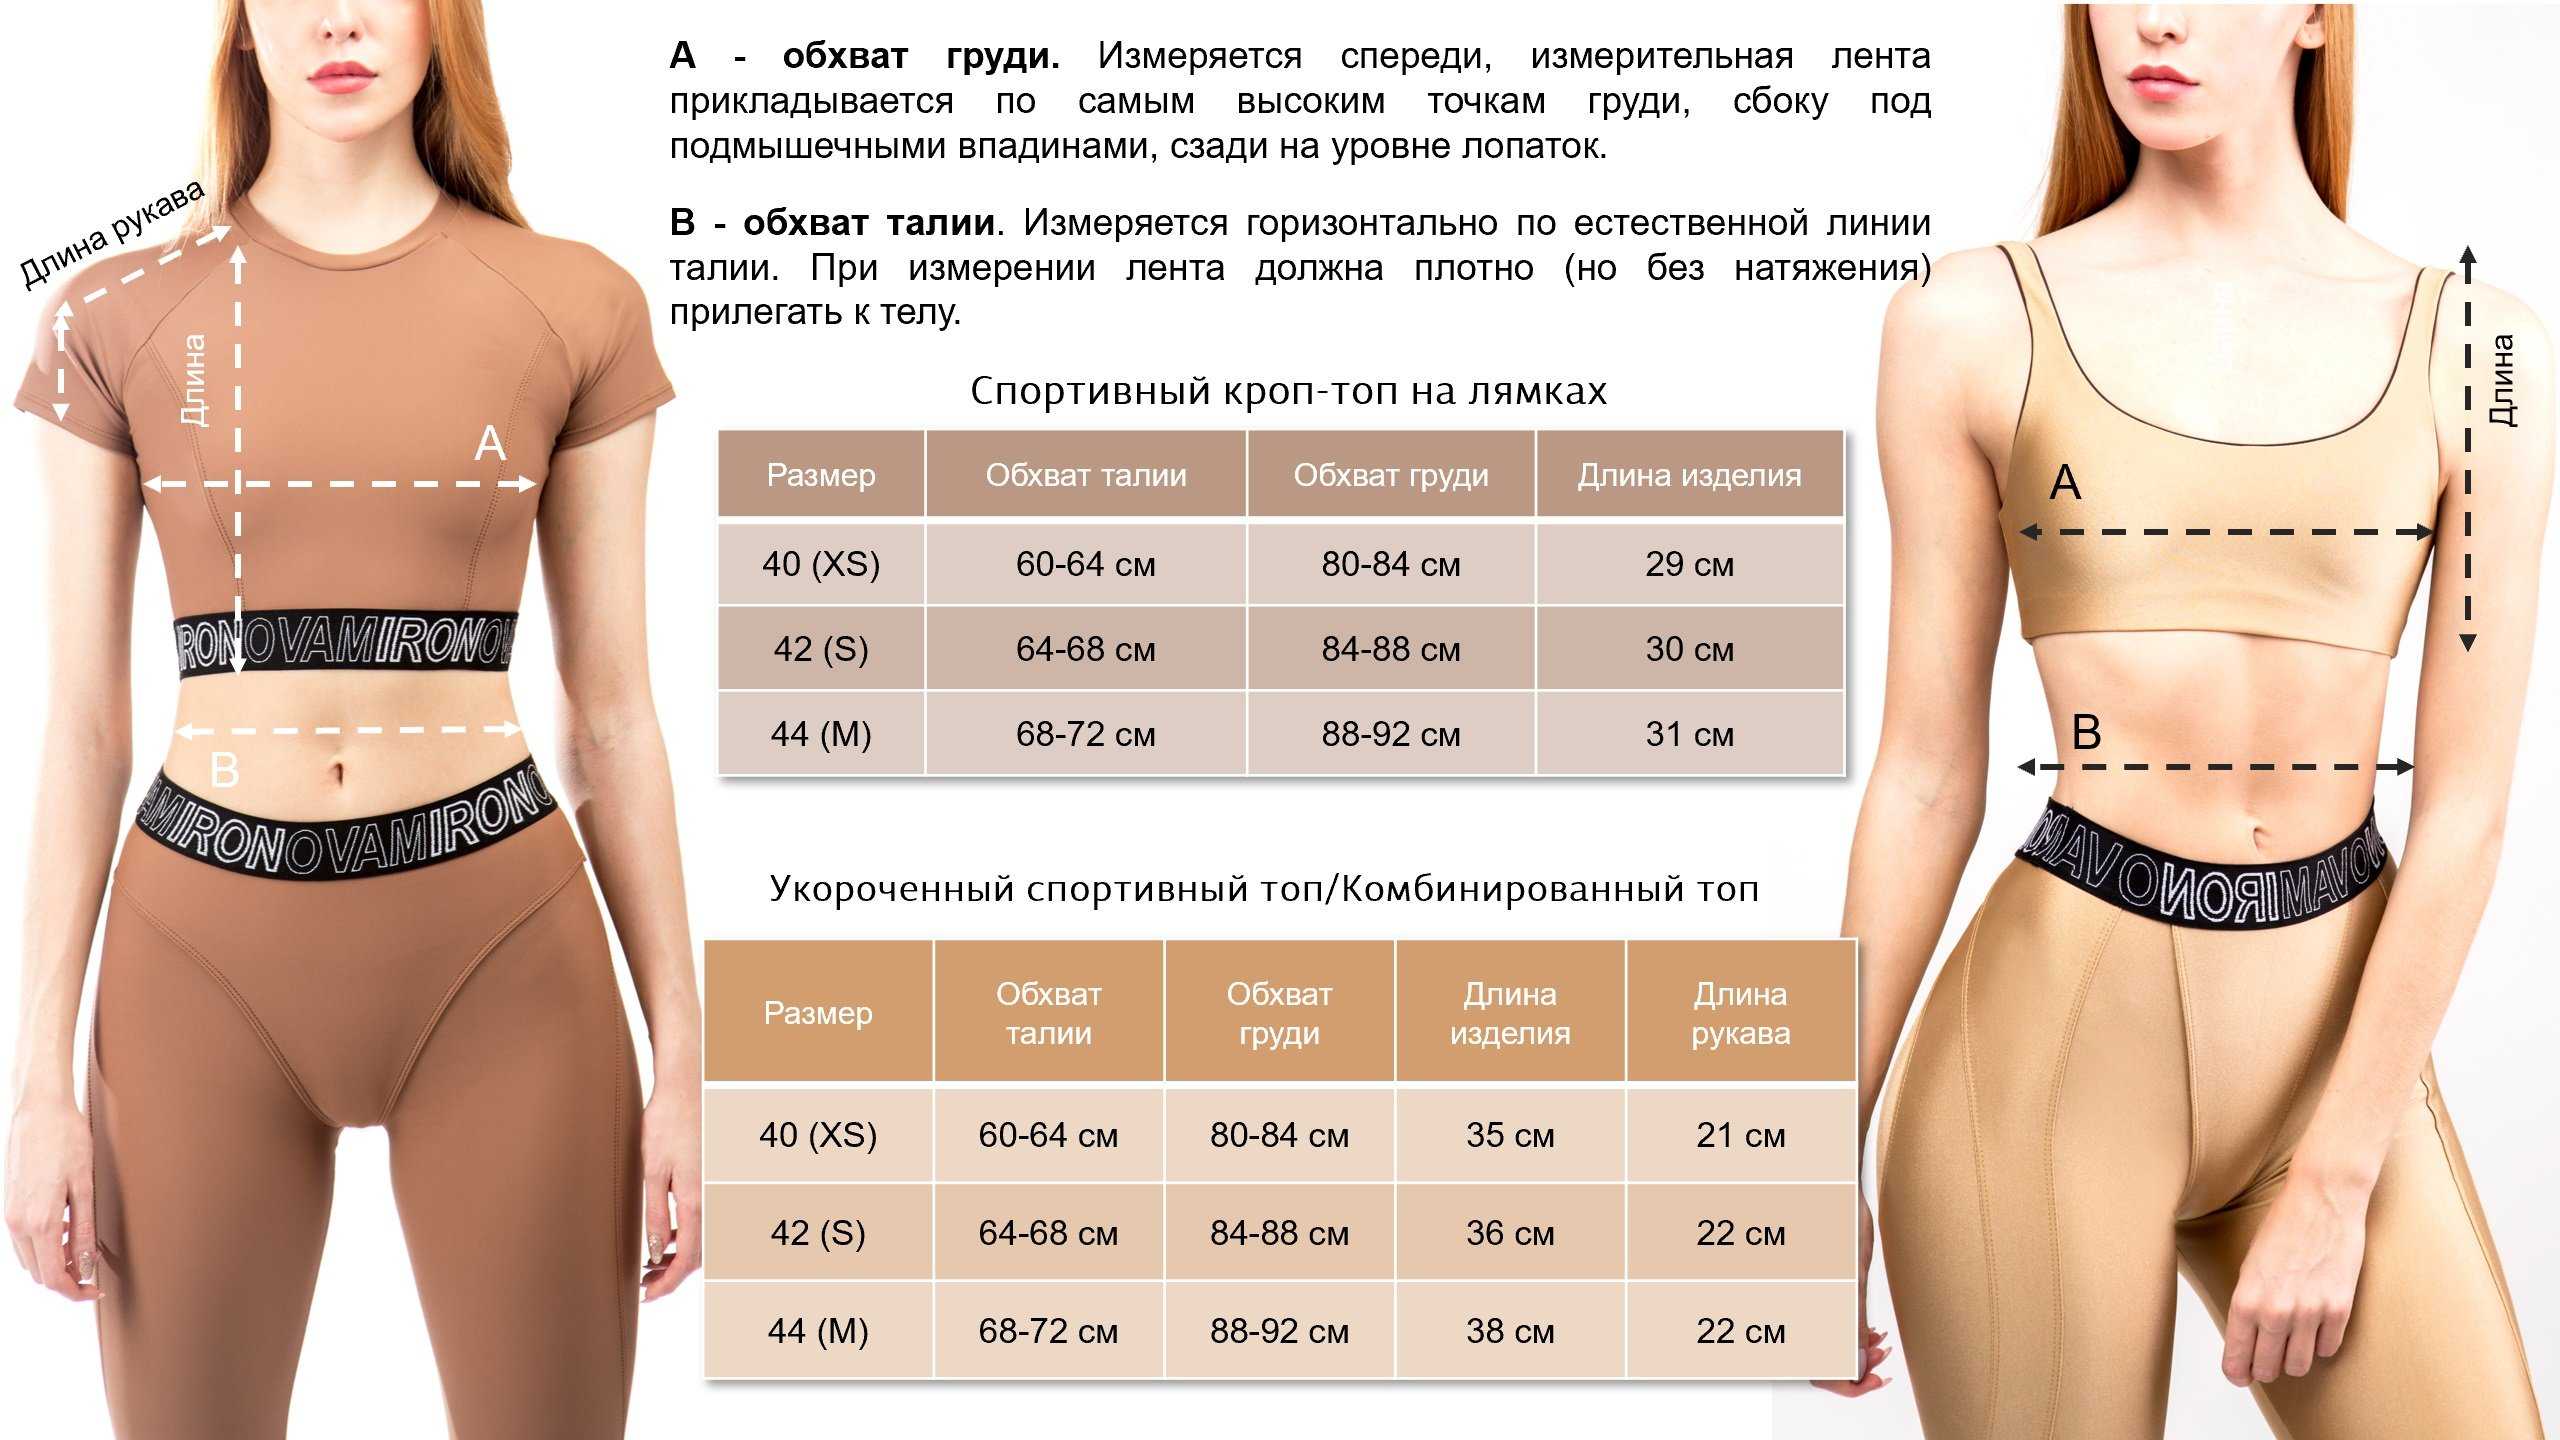 Измерить обхват груди